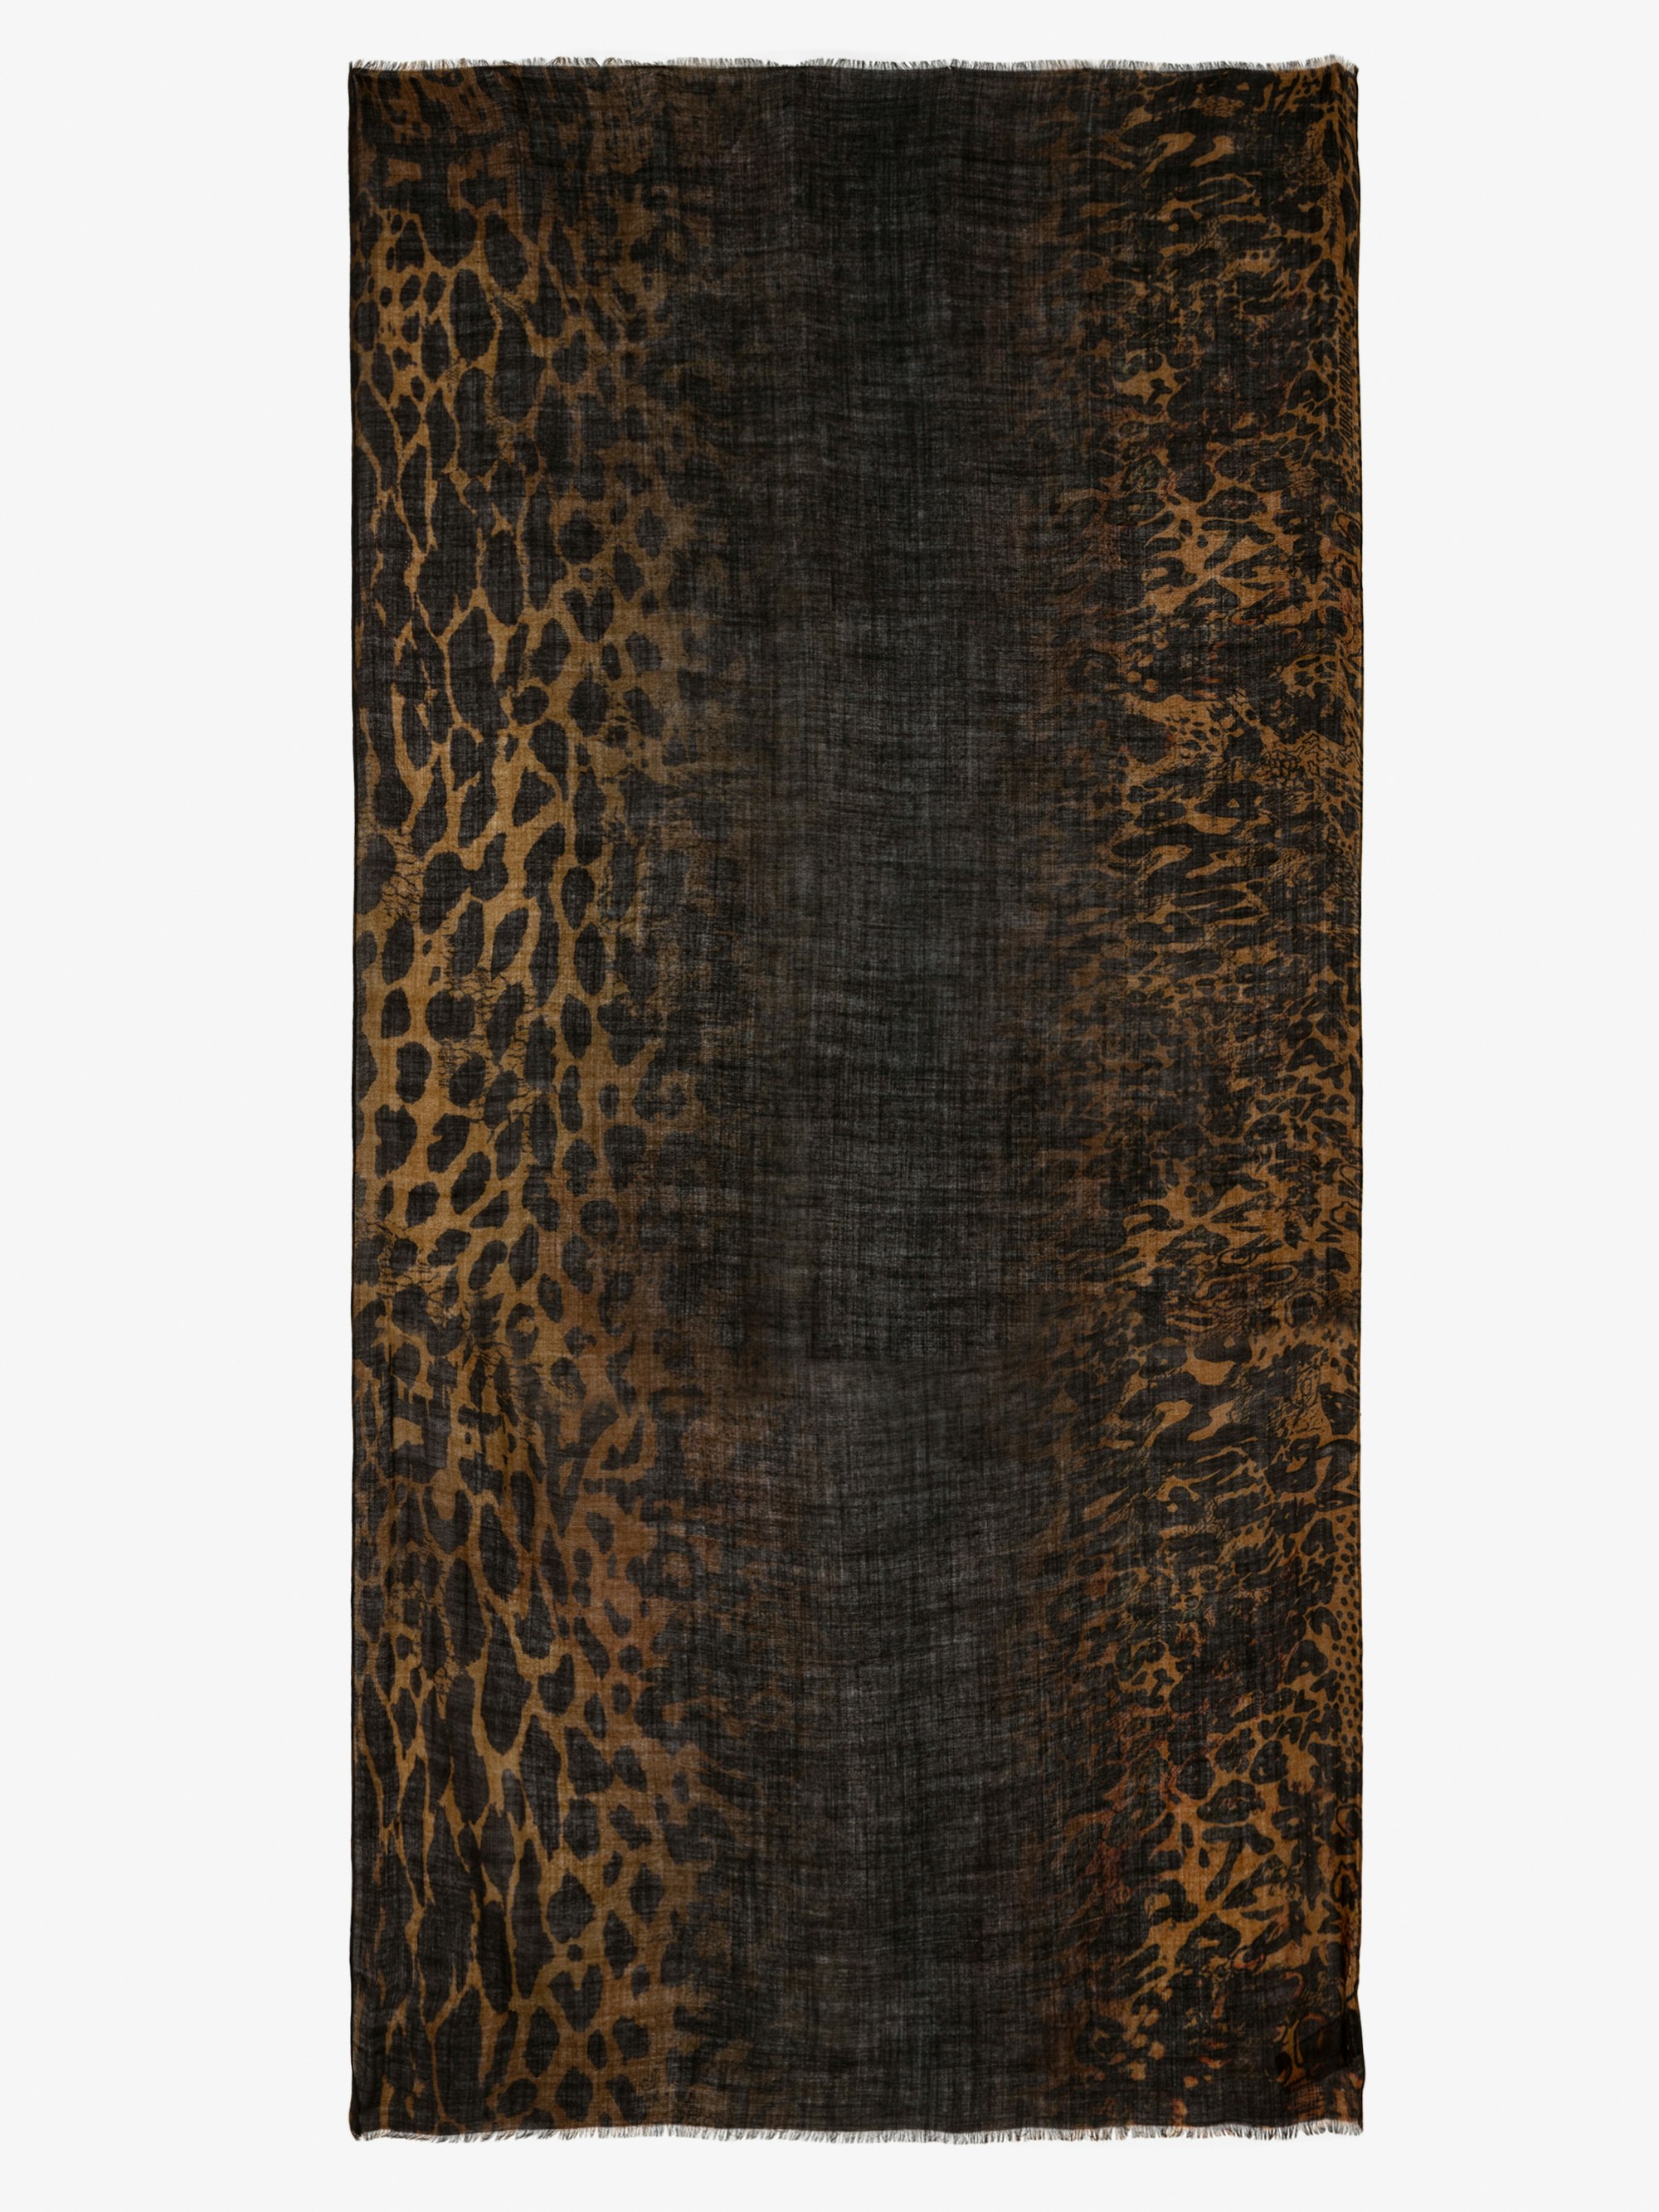 Pañuelo Judy - Pañuelo de lana de color marrón con estampado de leopardo con efecto tie & dye.